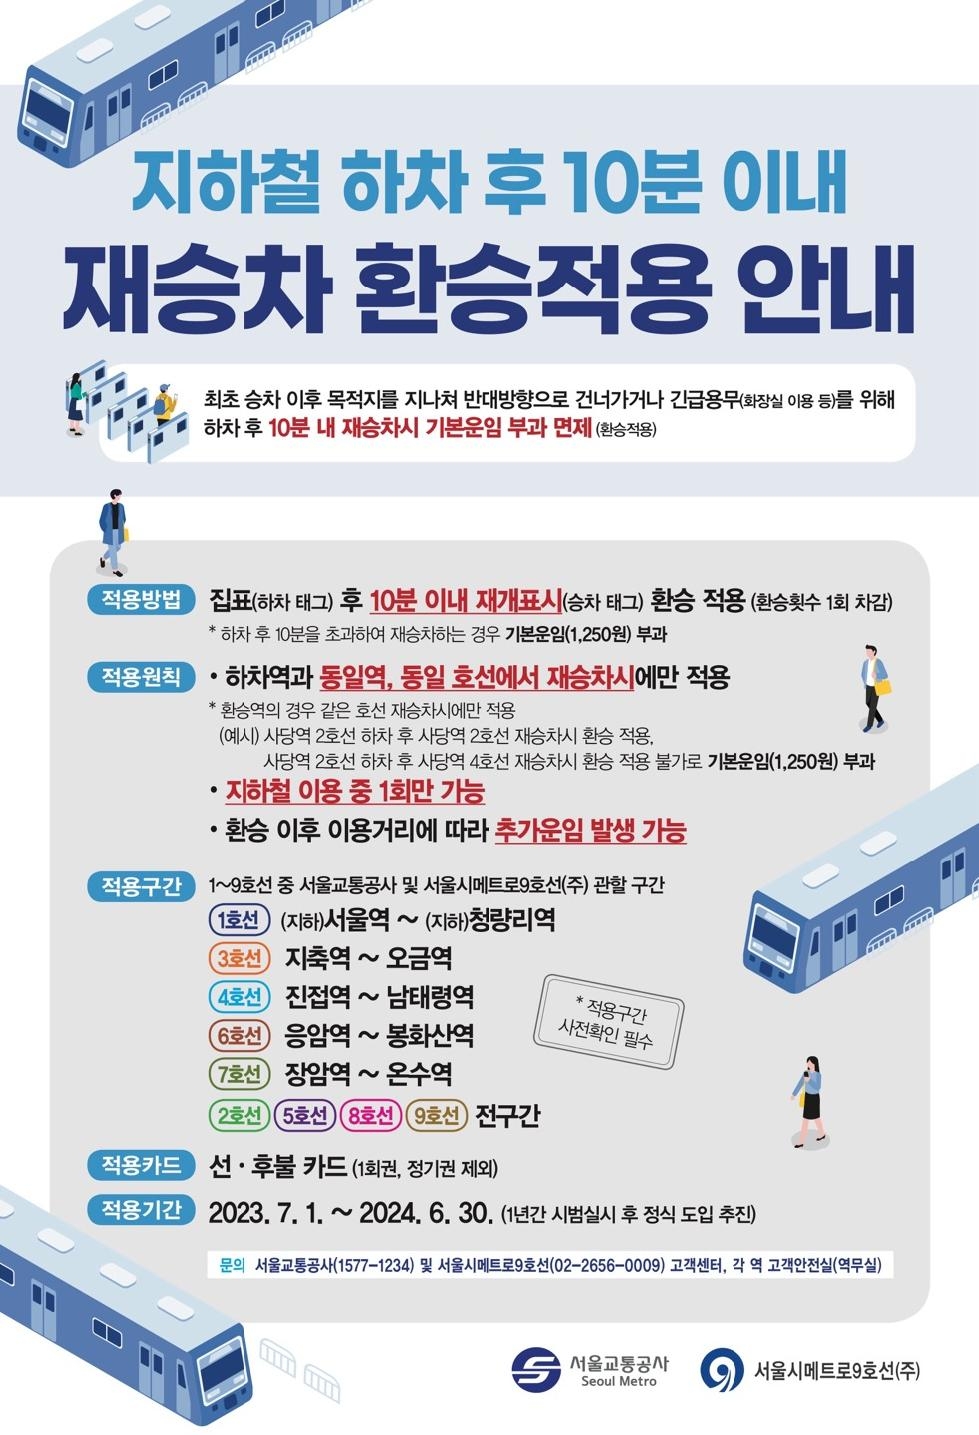 서울시, 7월 1일부터 `창의행정 1호` `하차 후 10분 내 재승차시 환승` 적용